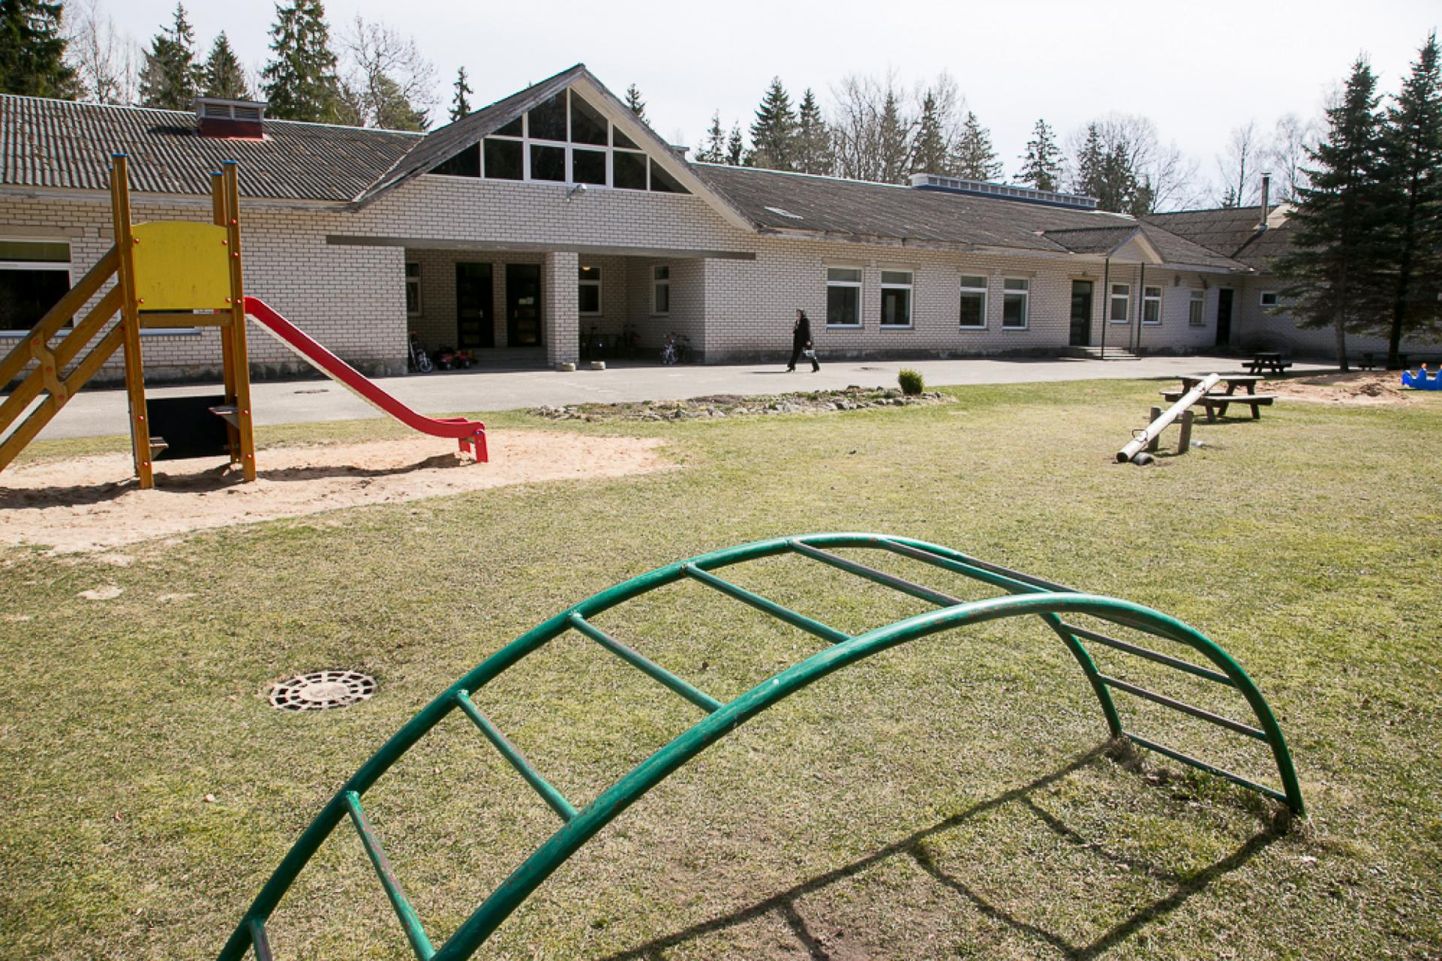 Libatse lasteaia-algkooli tegevus lõpetatakse 1. juulist 2020, nagu otsustasid Põhja-Pärnumaa vallavolikogu liikmed märtsiistungil.